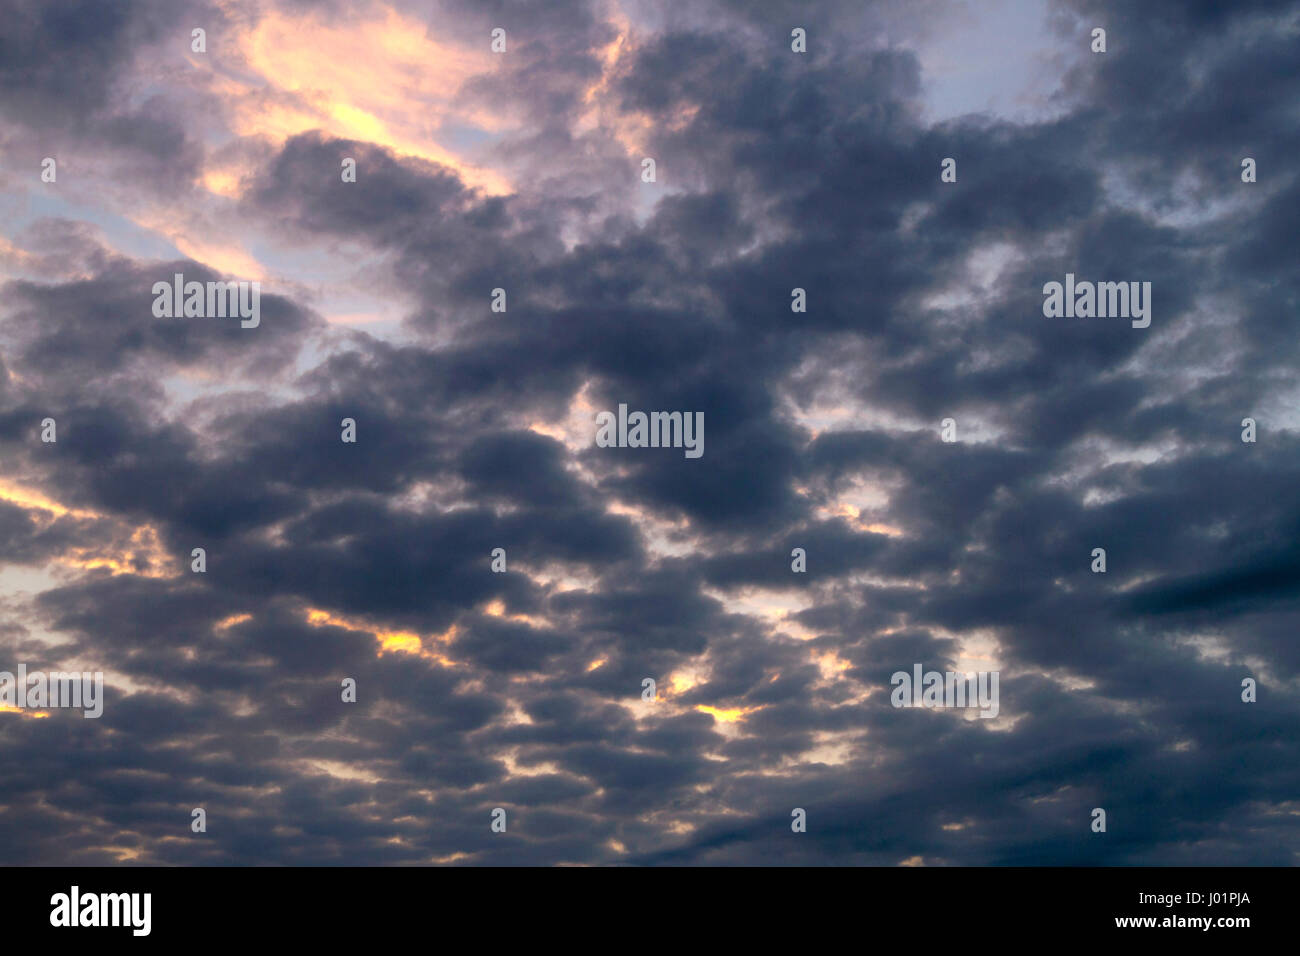 Dunkle, wispy Wolken verdecken teilweise ein blauer Himmel und farbenprächtigen Sonnenuntergang Stockfoto